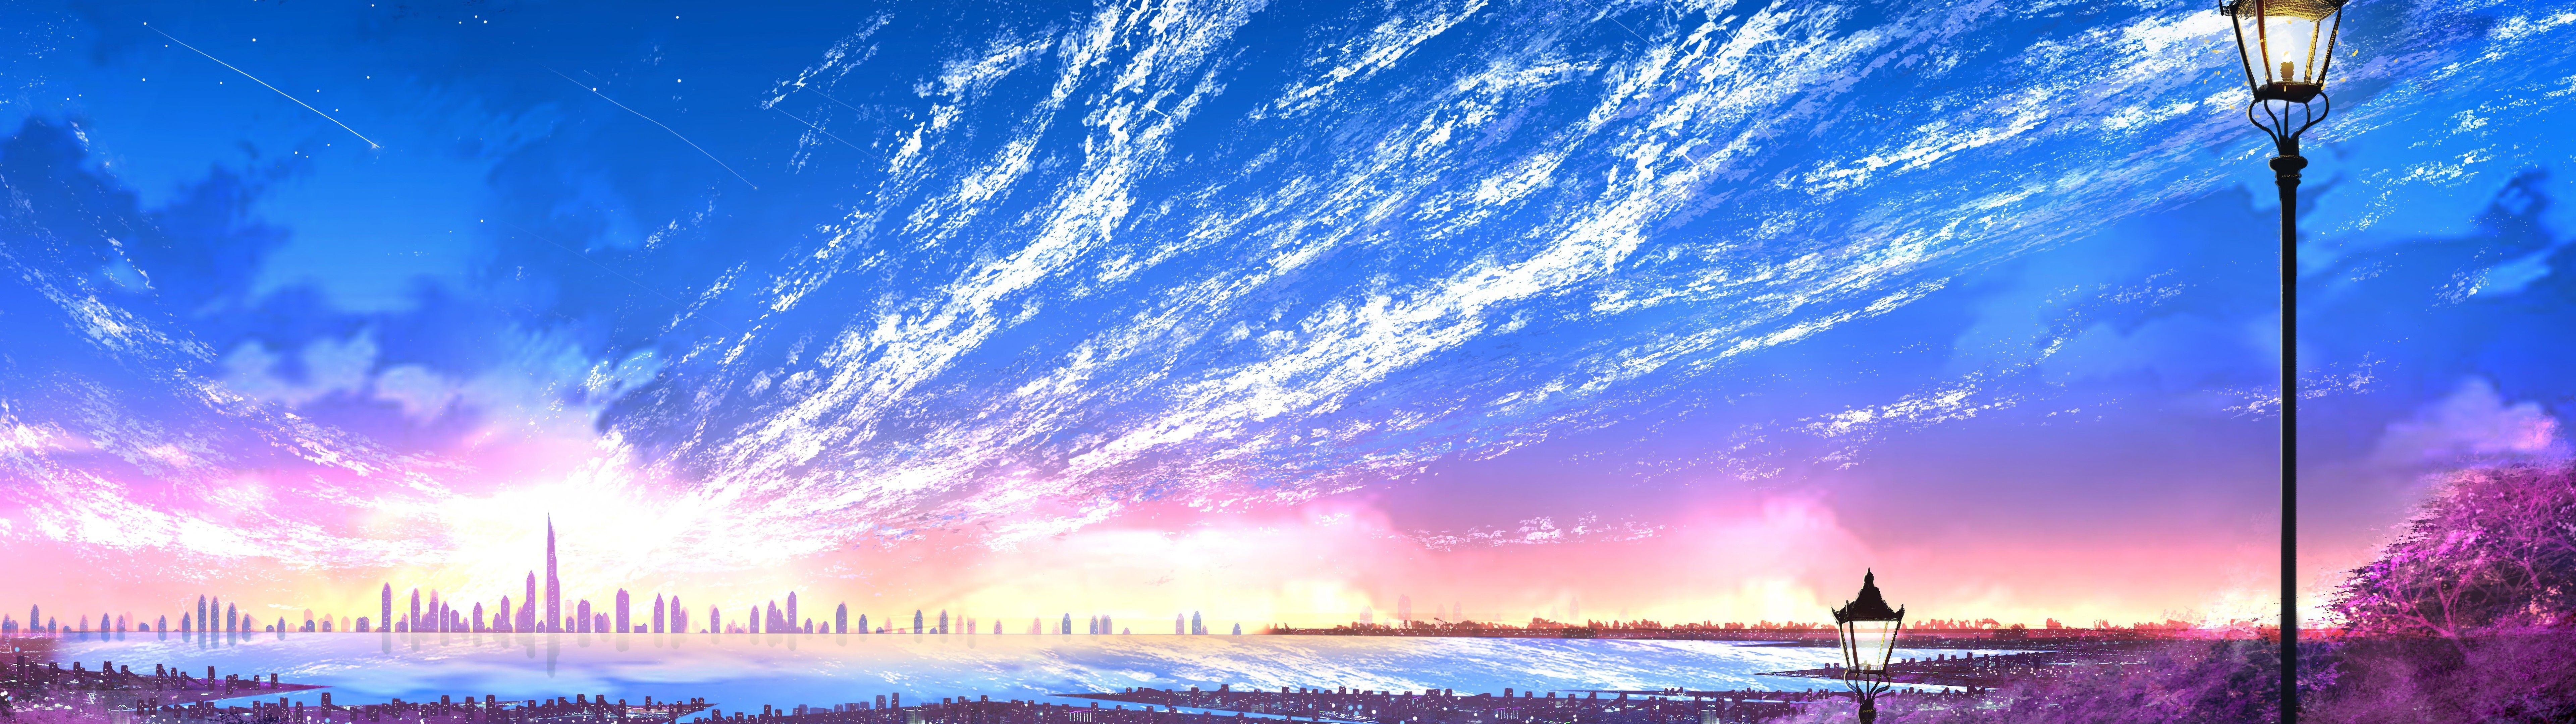 Sky, City, Scenery, Horizon, Landscape, Anime, 8k, Image